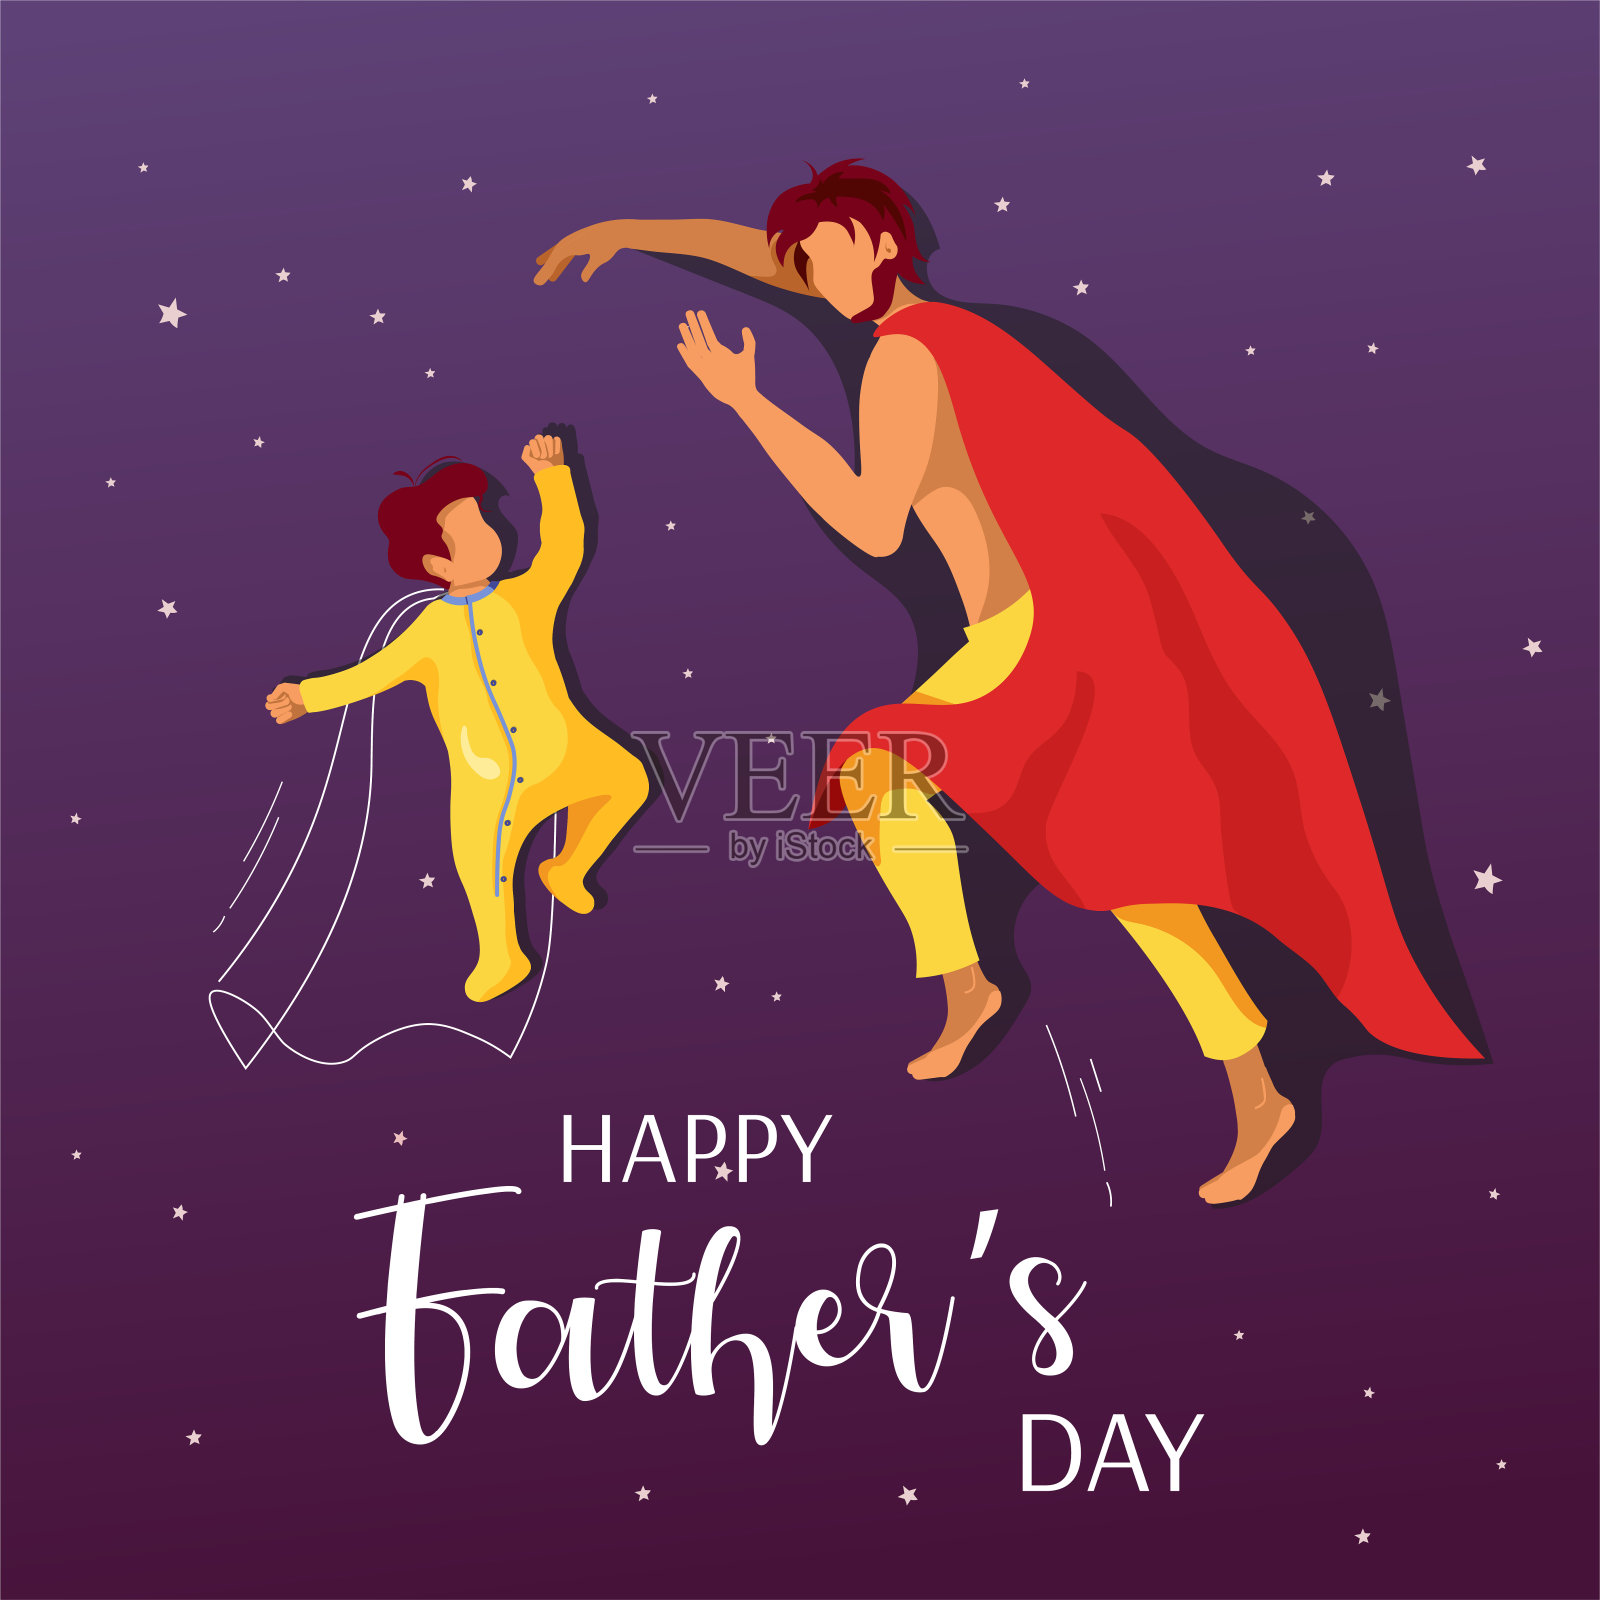 为父亲节快乐设计的卡片。熟睡的宝宝和爸爸裹着红毯子，就像披着超级英雄斗篷。插画图片素材